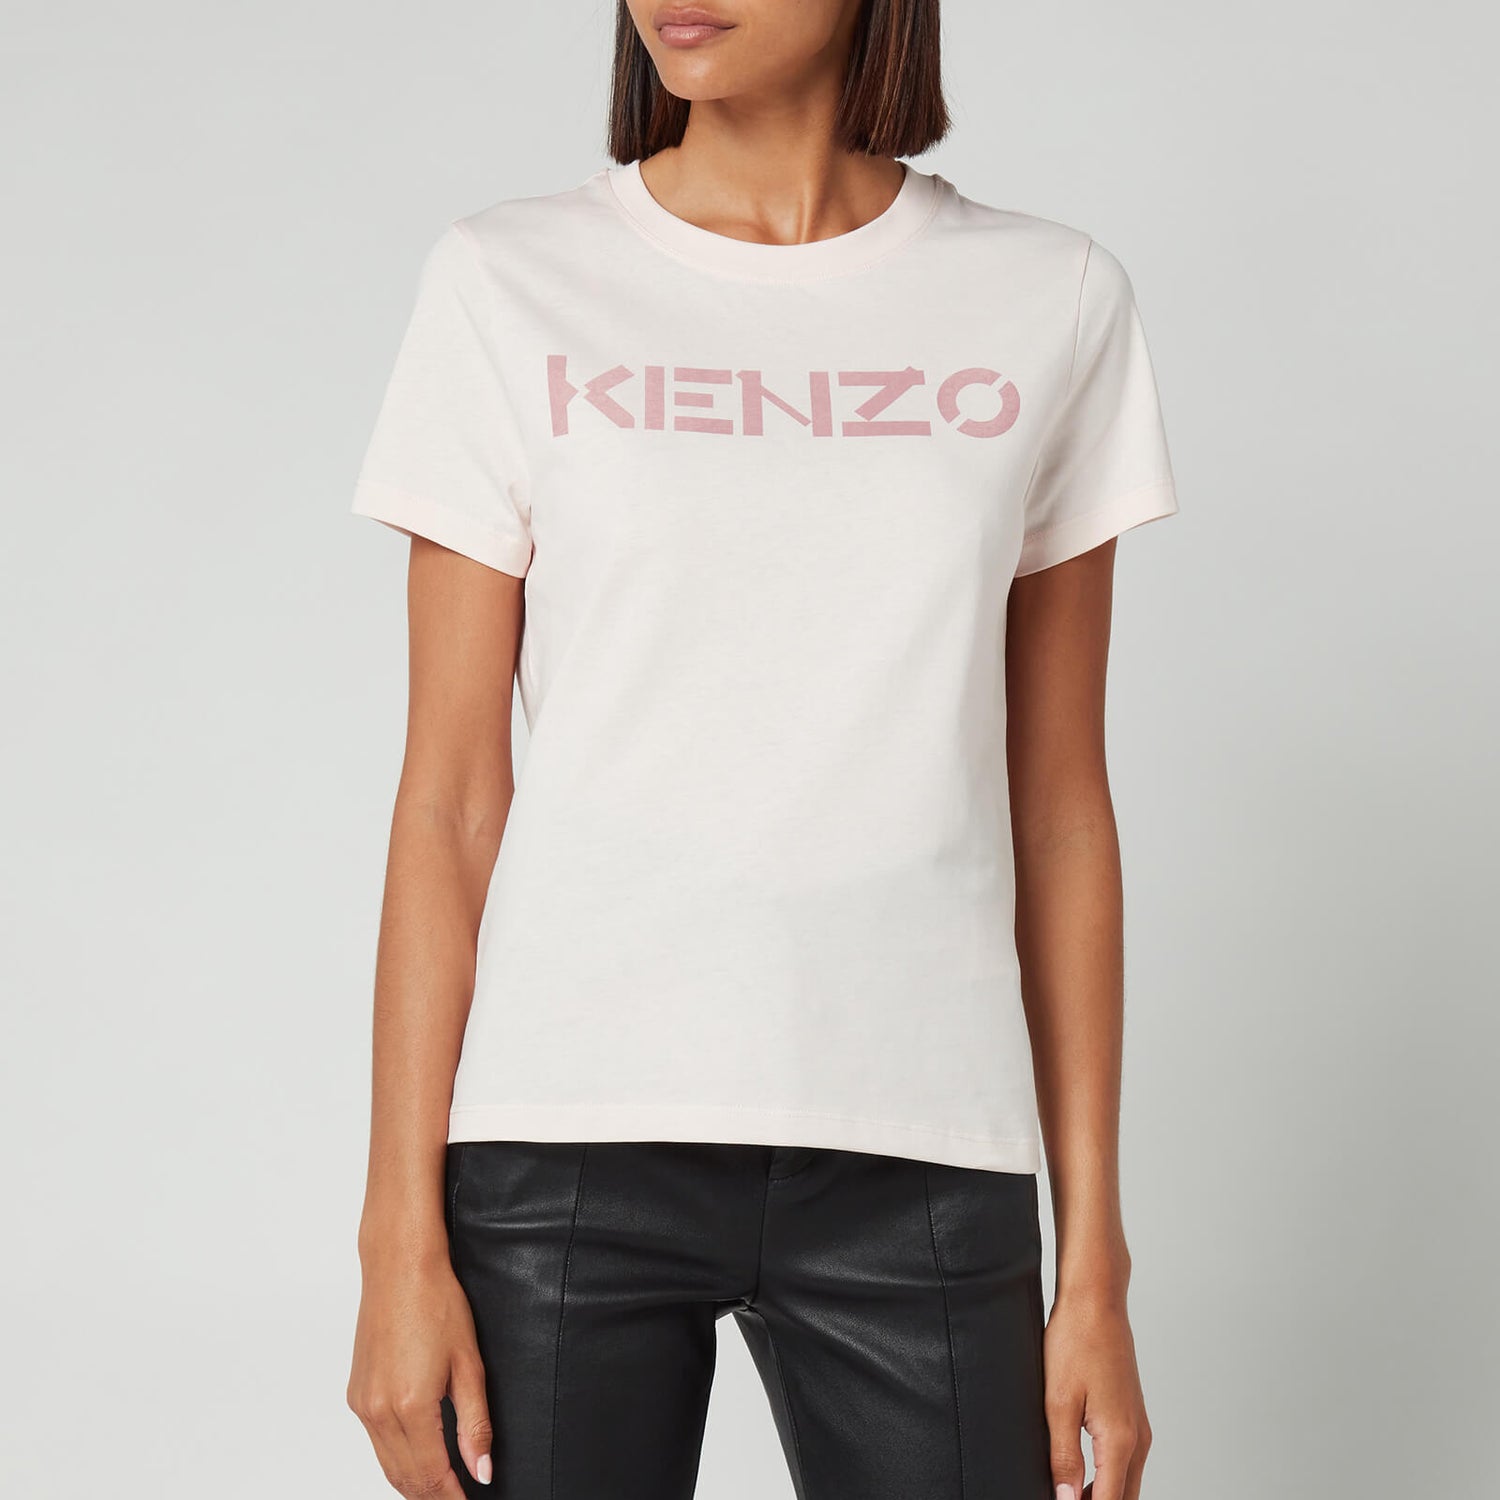 KENZO Women's Logo Classic T-Shirt - Faded Pink